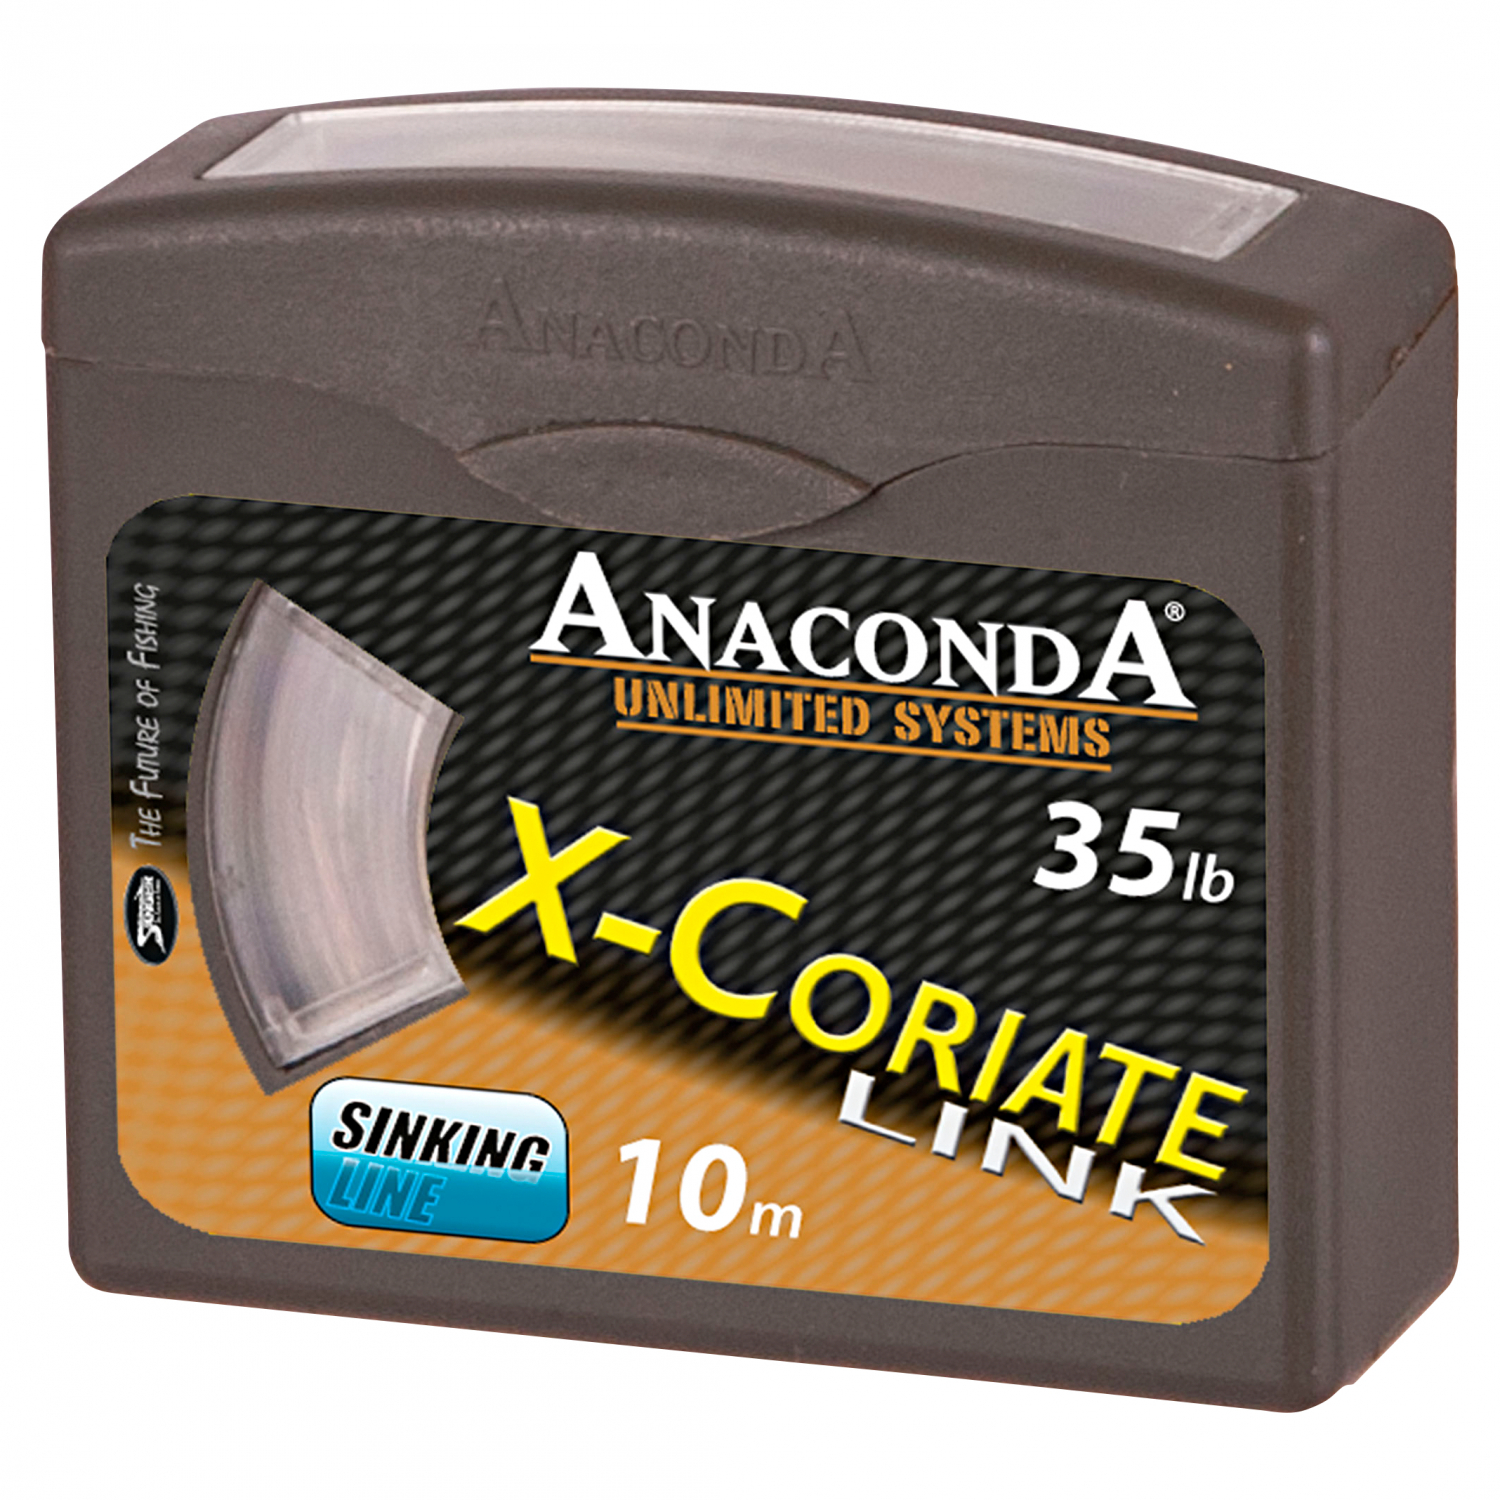 Anaconda Sänger Anaconda X-Coriate Link - Vorfachschnur 